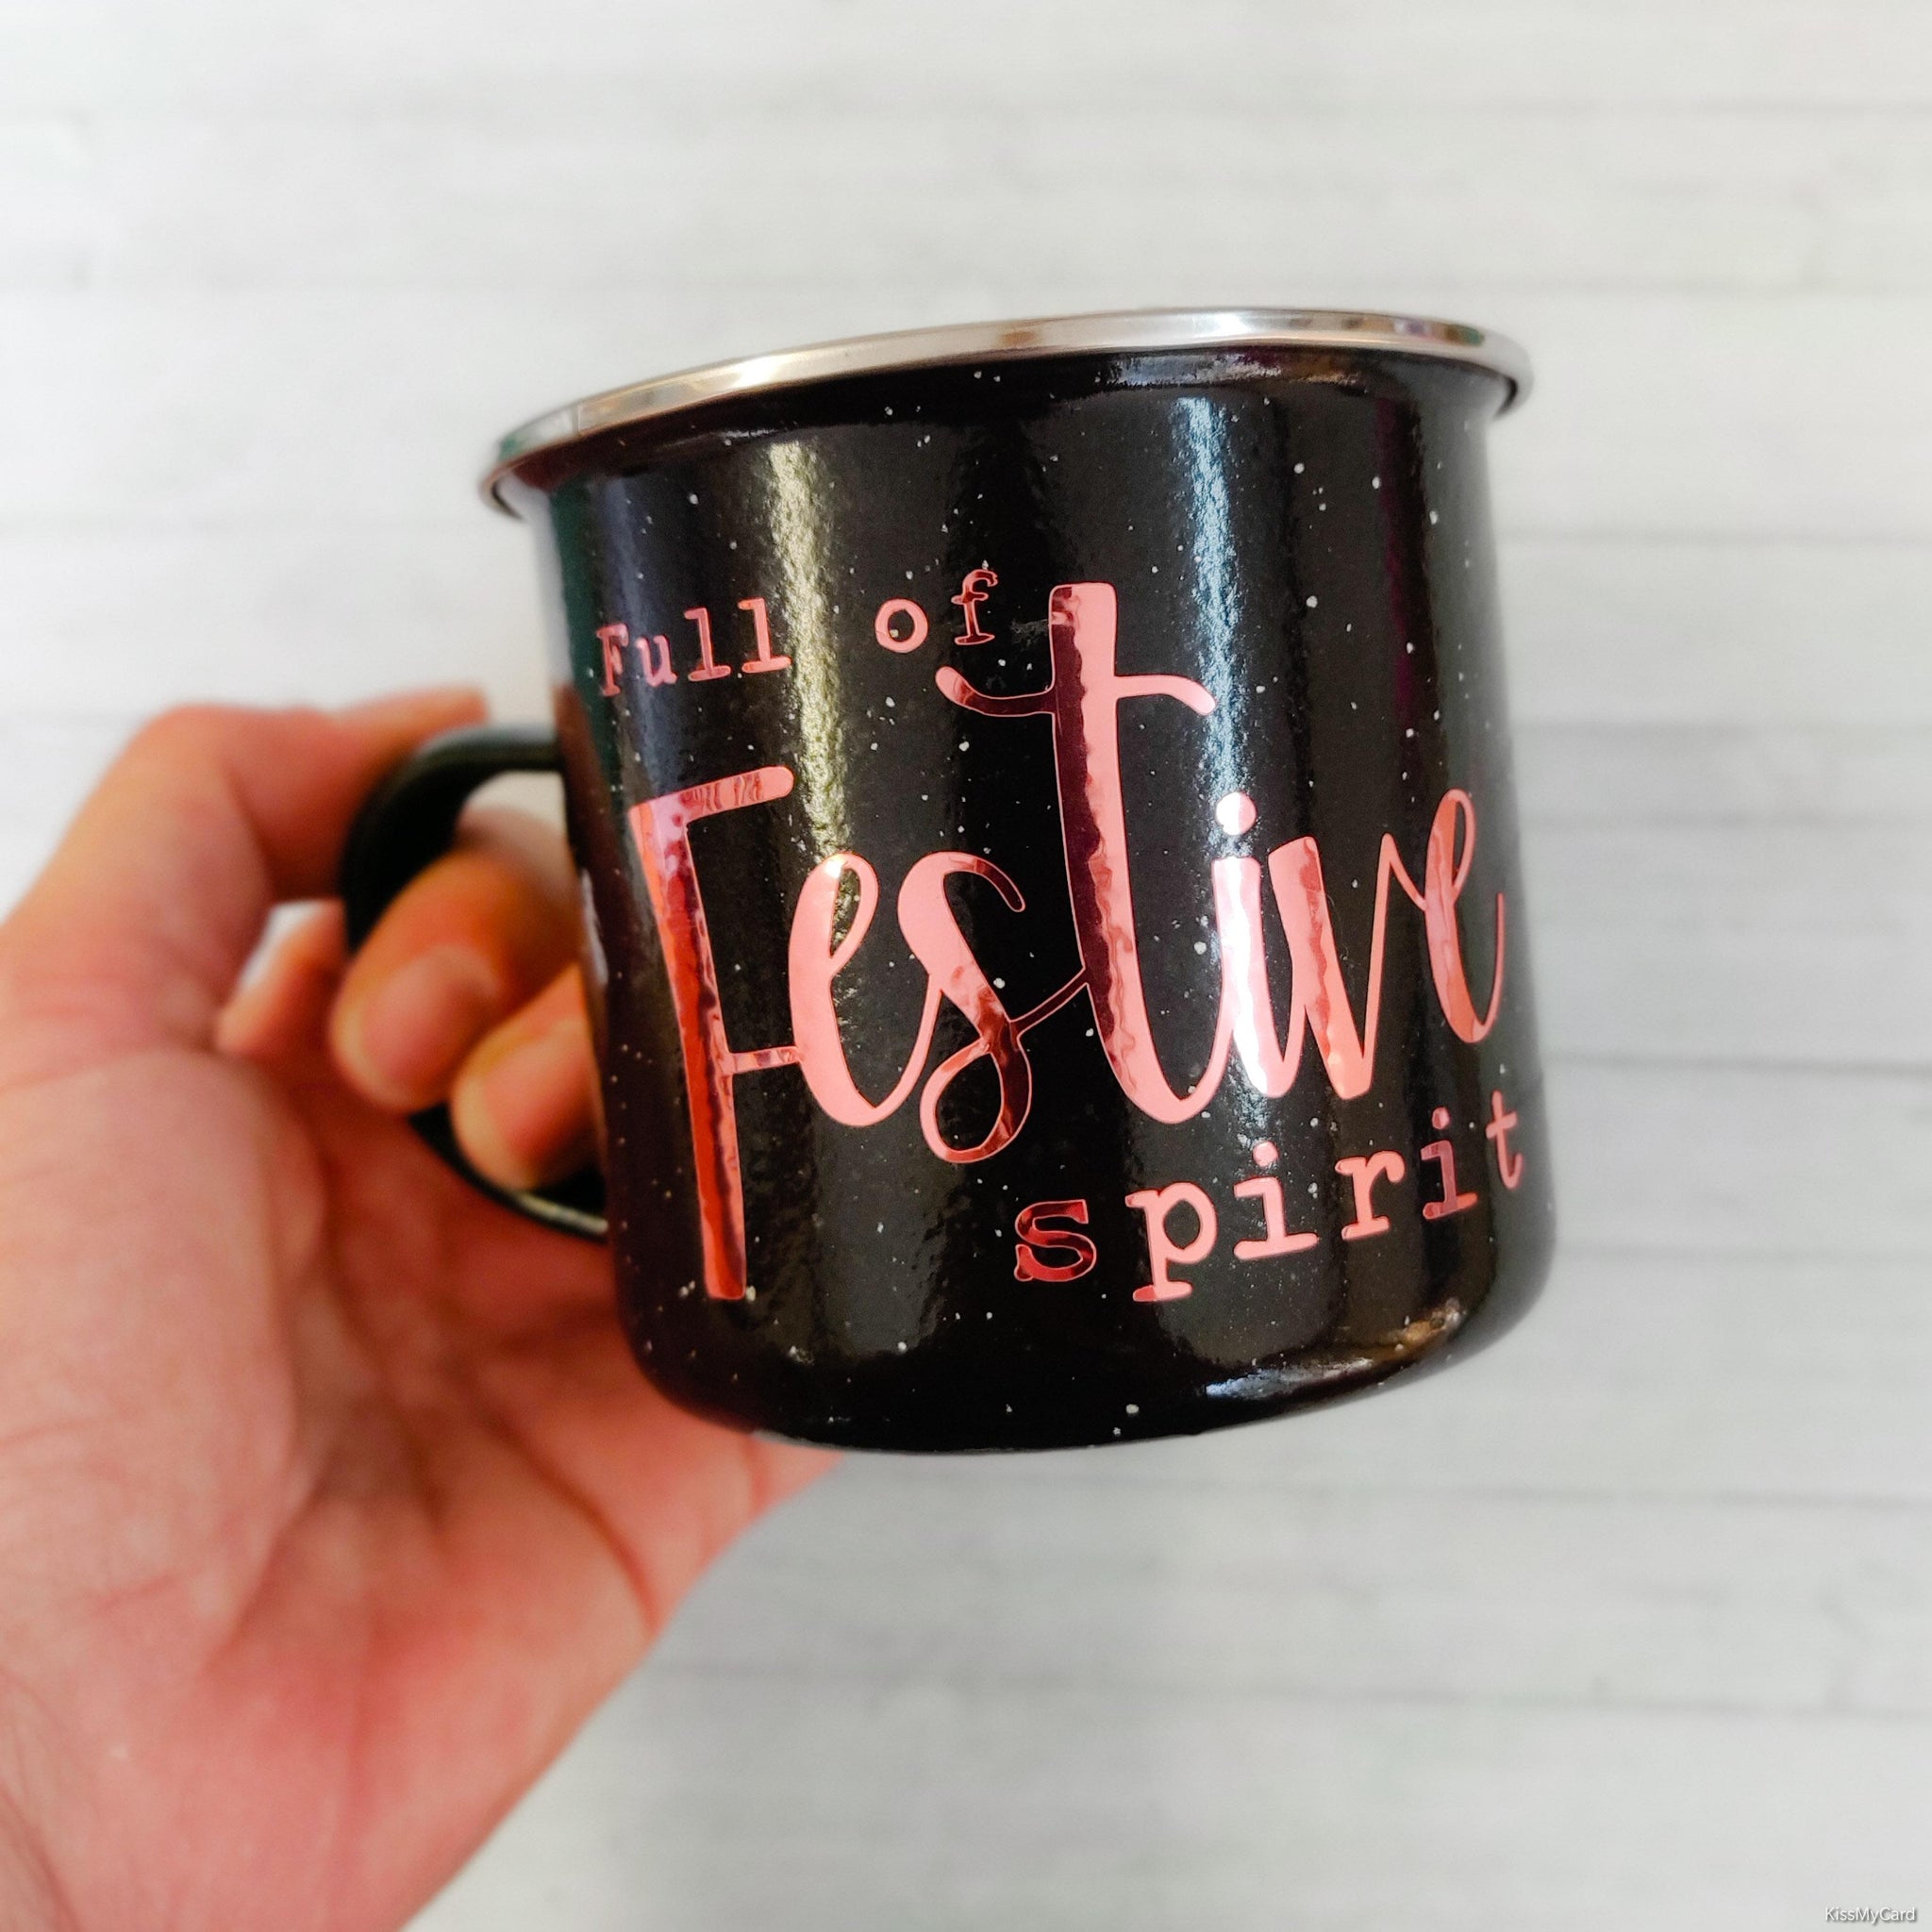 "Full of Festive Spirit" Black Enamel Mug